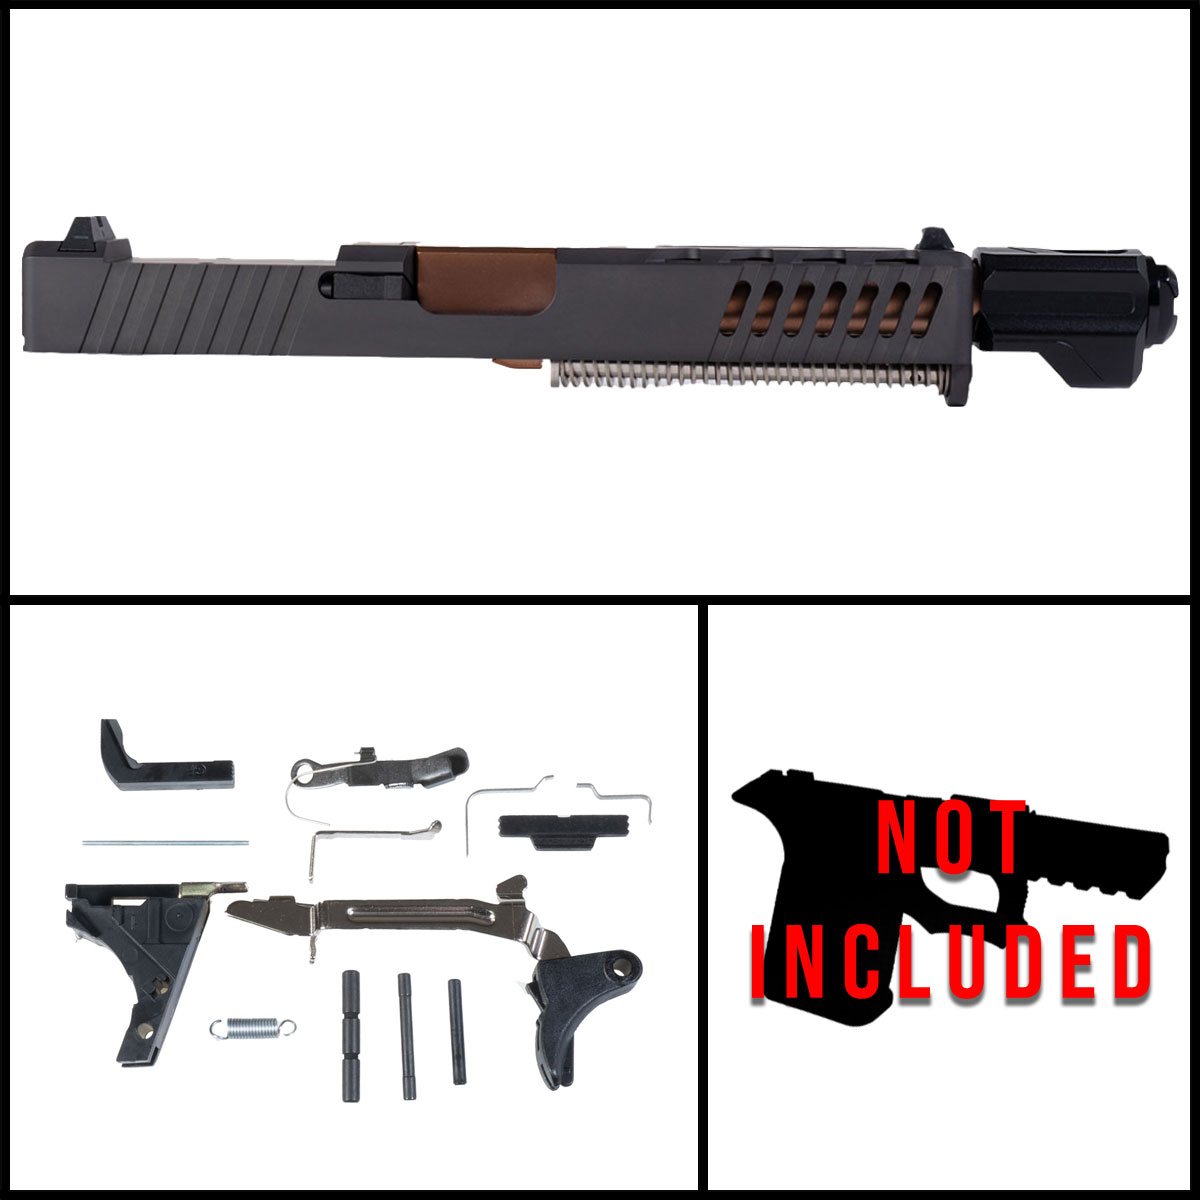 DTT 'Sundevil' 9mm Full Pistol Build Kit (Everything Minus Frame) - Glock 17 Gen 1-3 Compatible